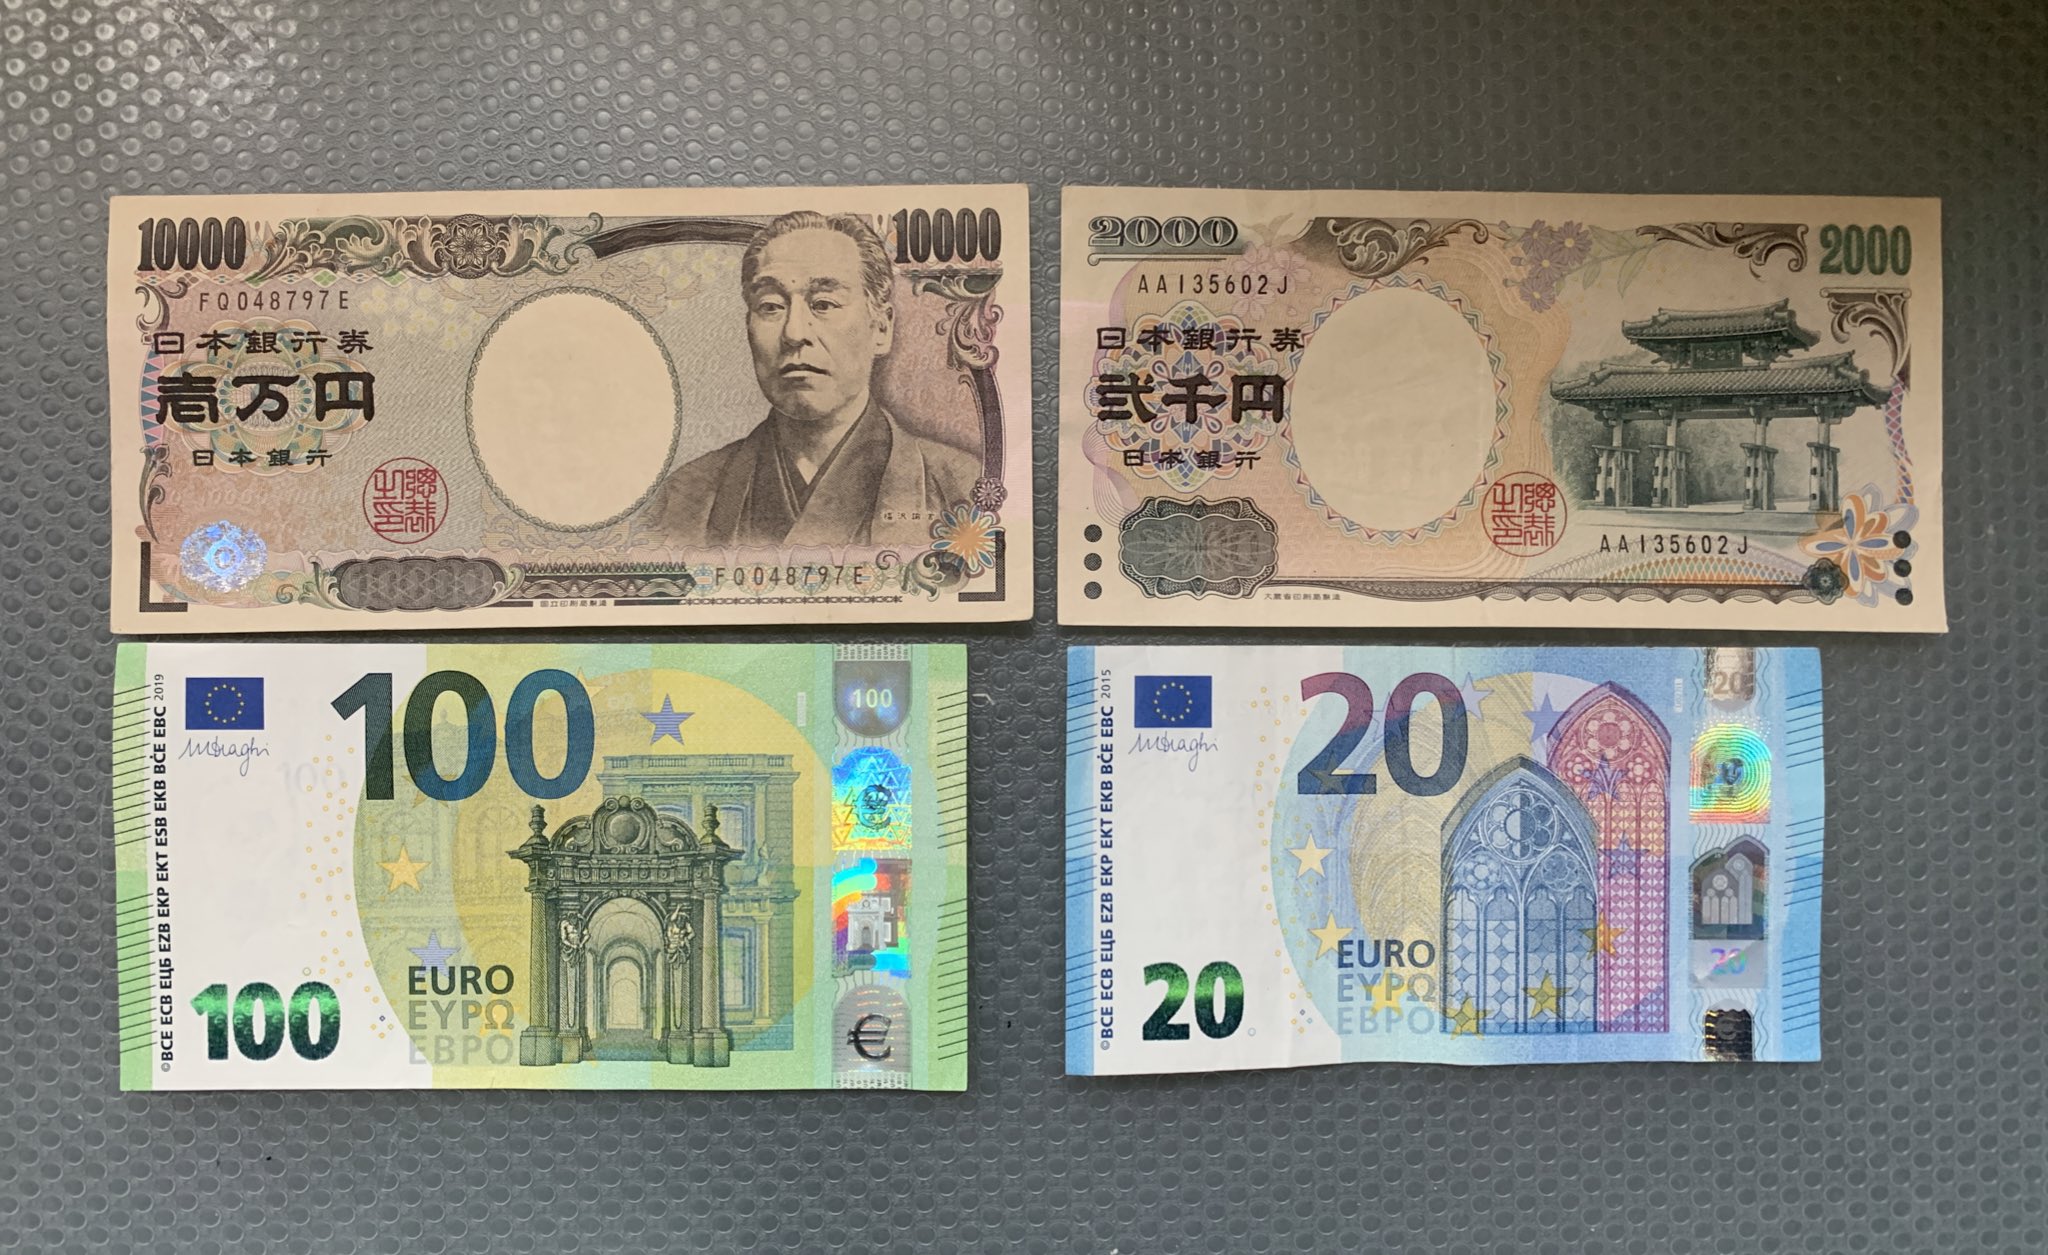 ヴィズマーラ恵子 上 旧100ユーロ紙幣 下 新100ユーロ紙幣 それぞれの裏面 ユーロ 紙幣には全て必ず橋の絵が描かれているのが特徴 日本円との大きさ比較 春財布を買う人は 海外ブランドの場合 気をつけよう 欧州のブランドはユーロ紙幣のサイズ